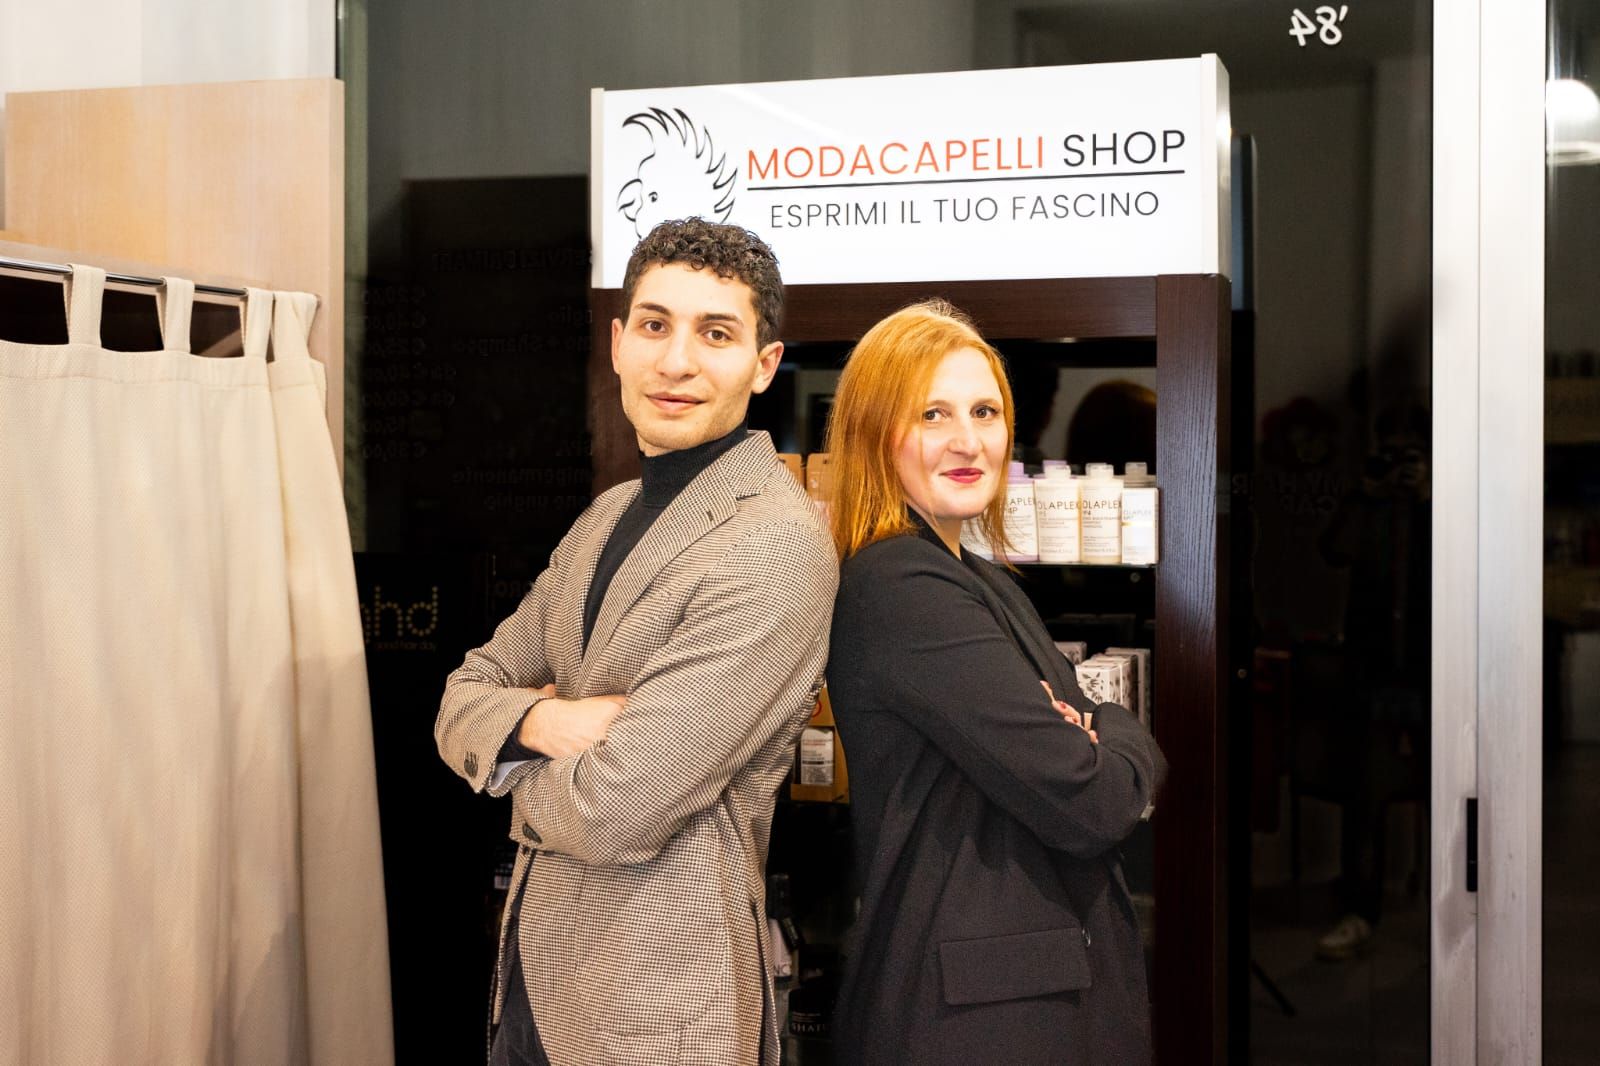 Abruzzo Impresa - Modacapelli shop, Pescara diventa leader dell’haircare in digitale